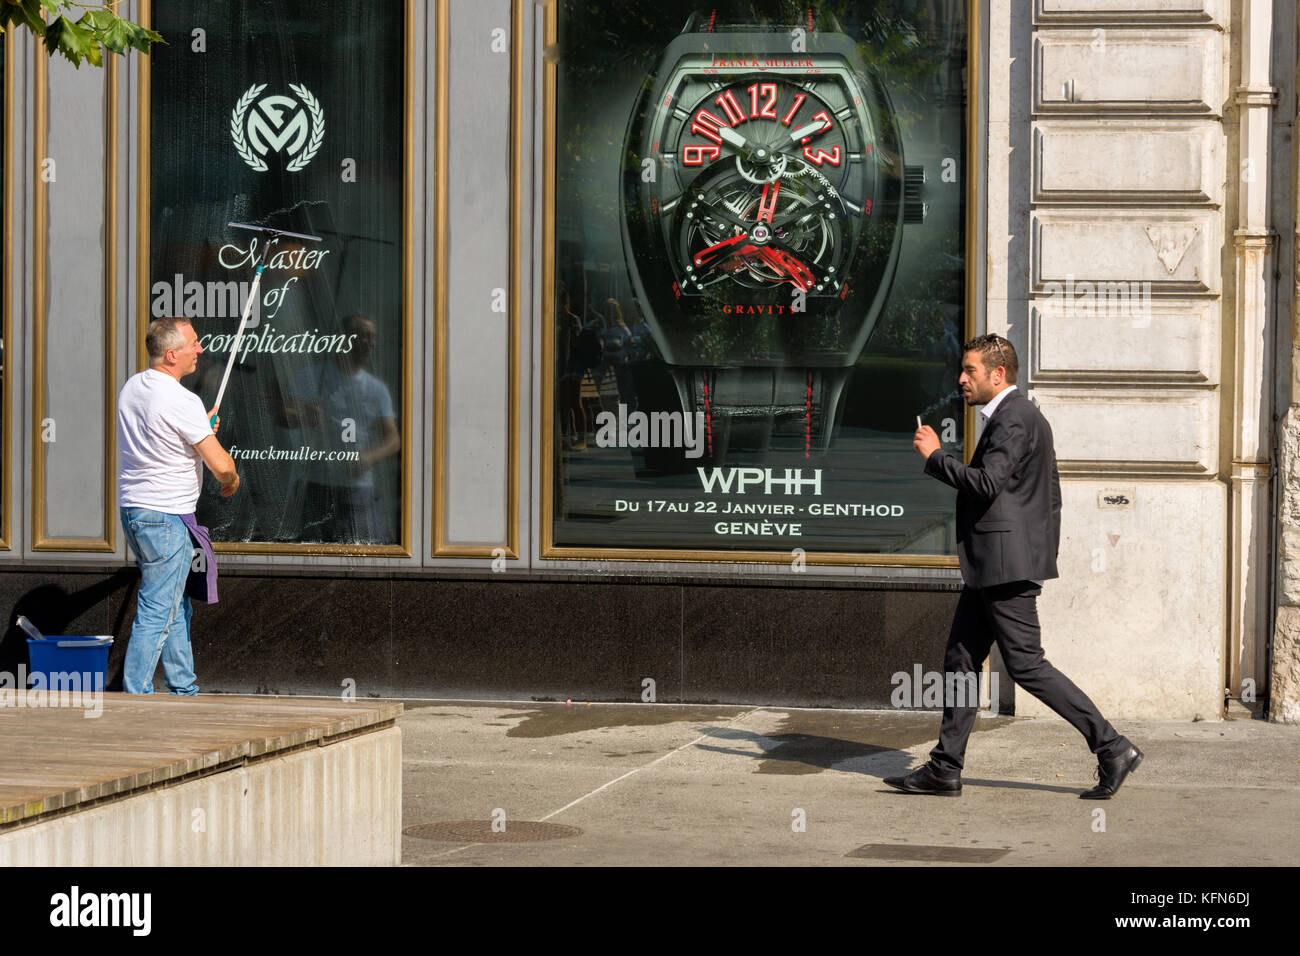 Genève, SUISSE - Le 29 août. Square Belair, la boutique d'un grand fabricant de montres suisse Banque D'Images